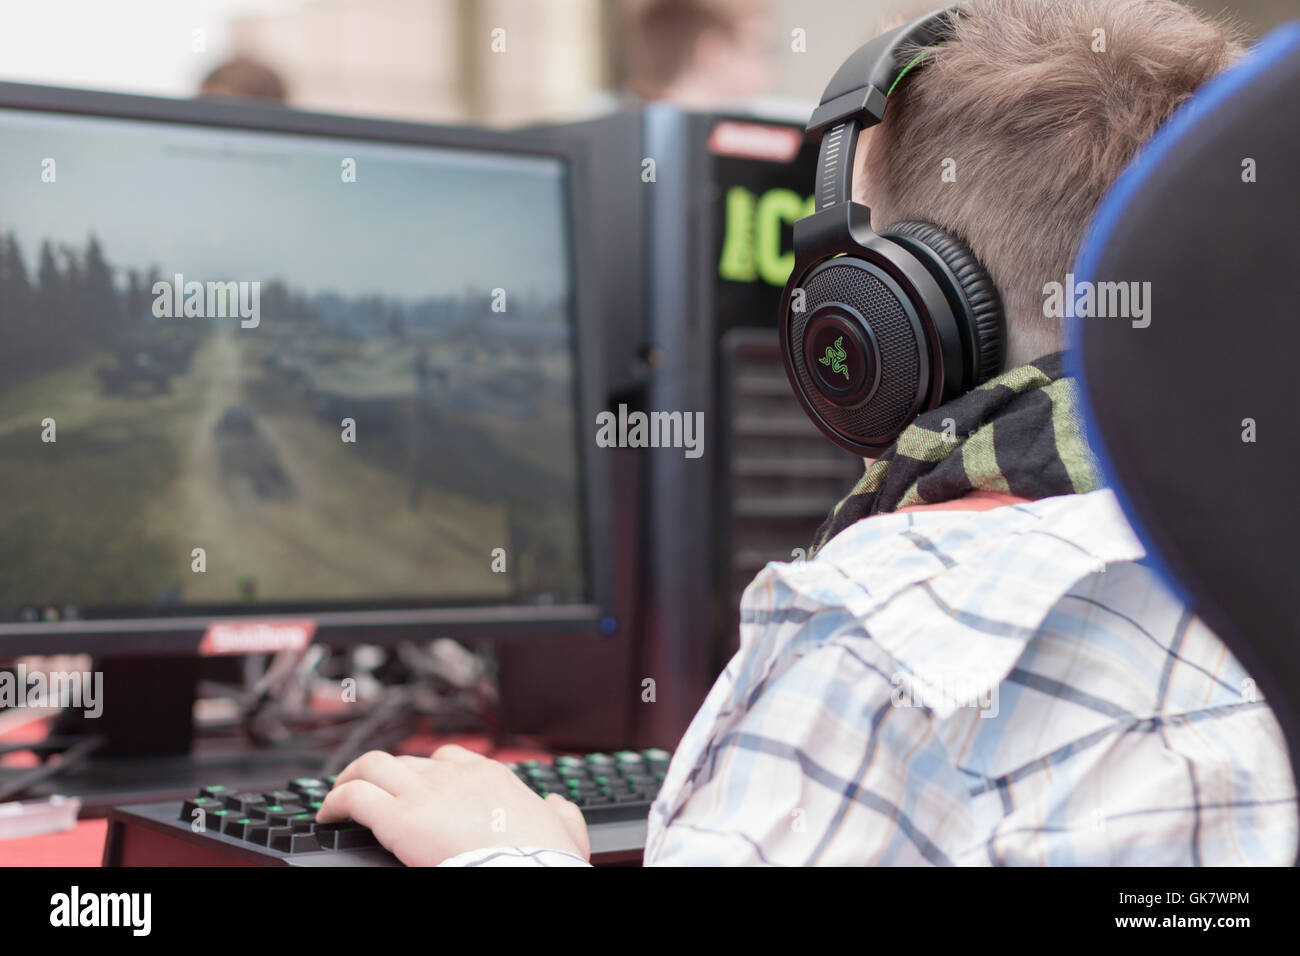 BRNO, Tschechische Republik - 30. April 2016: Junger Mann sitzt auf Gaming-Stuhl und spielt Spiel auf PC bei con, Anime-convention Stockfoto